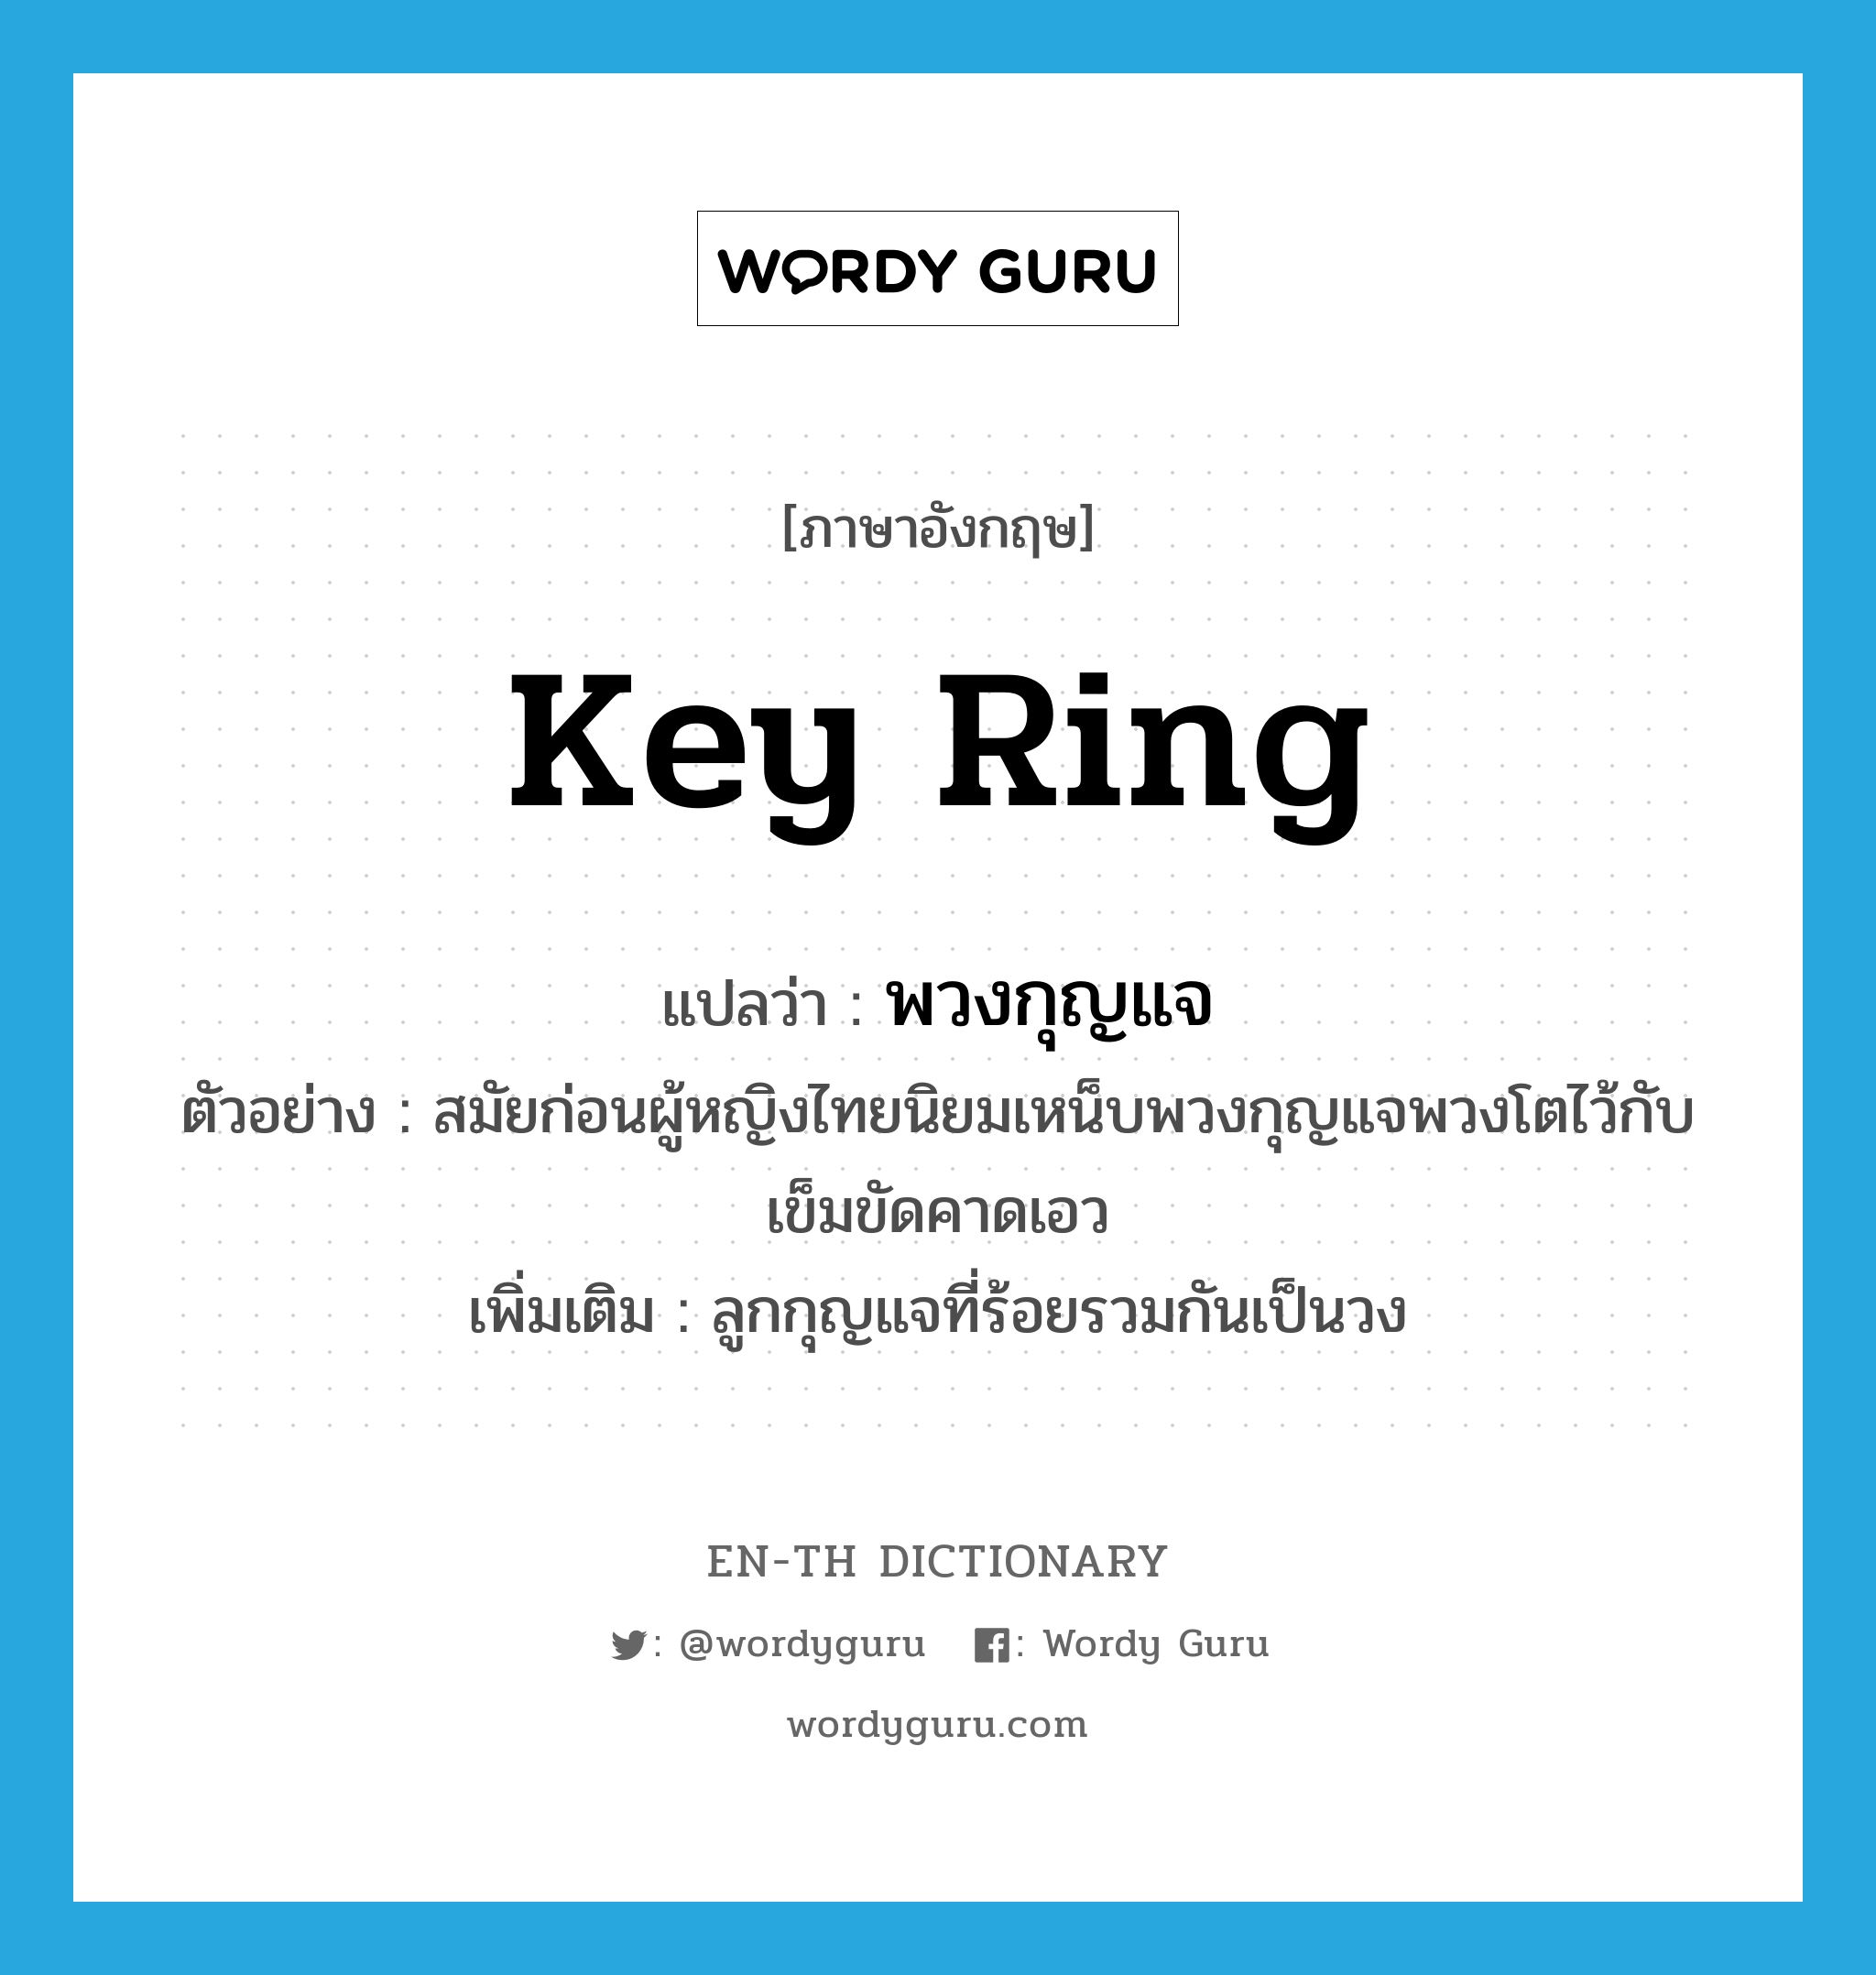 พวงกุญแจ ภาษาอังกฤษ?, คำศัพท์ภาษาอังกฤษ พวงกุญแจ แปลว่า key ring ประเภท N ตัวอย่าง สมัยก่อนผู้หญิงไทยนิยมเหน็บพวงกุญแจพวงโตไว้กับเข็มขัดคาดเอว เพิ่มเติม ลูกกุญแจที่ร้อยรวมกันเป็นวง หมวด N